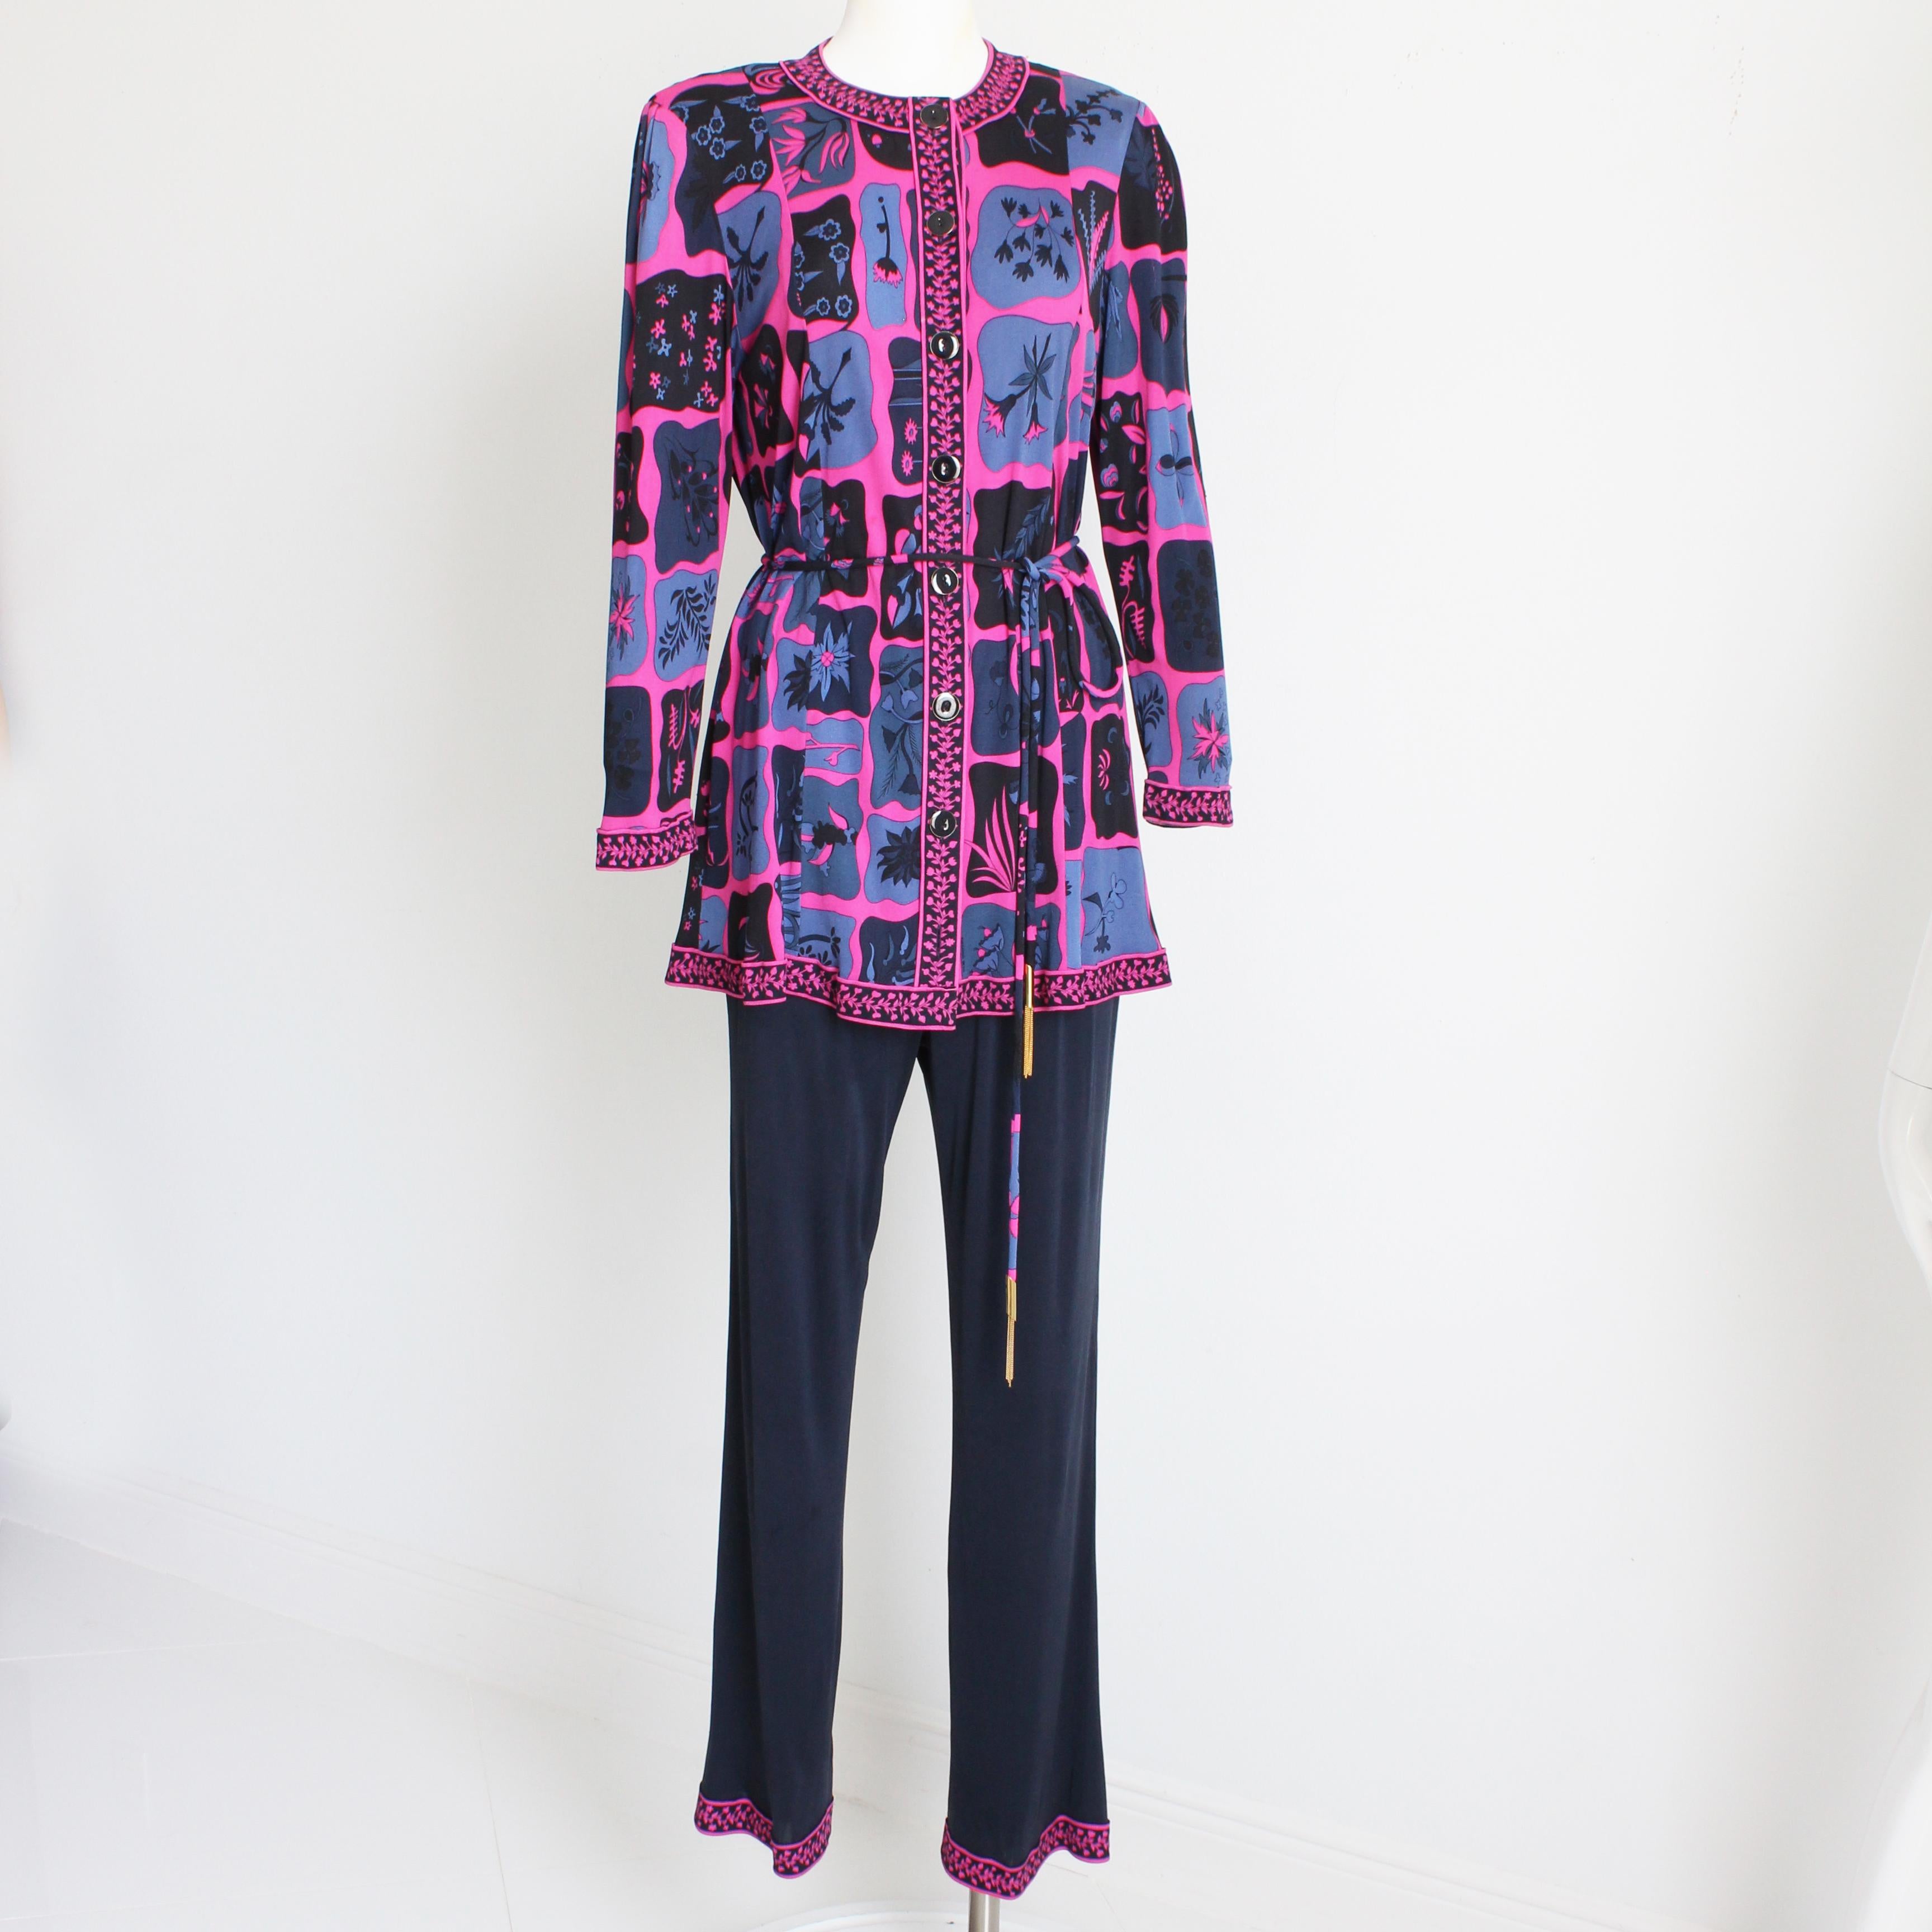 Voici un costume pantalon 3 pièces à imprimé vibrant d'Averardo Bessi, probablement réalisé au début des années 90.  Les couleurs de ce set sont étonnantes, avec des nuances de violet, d'indigo, de lavande lumineuse et de bleu ardoise ! 